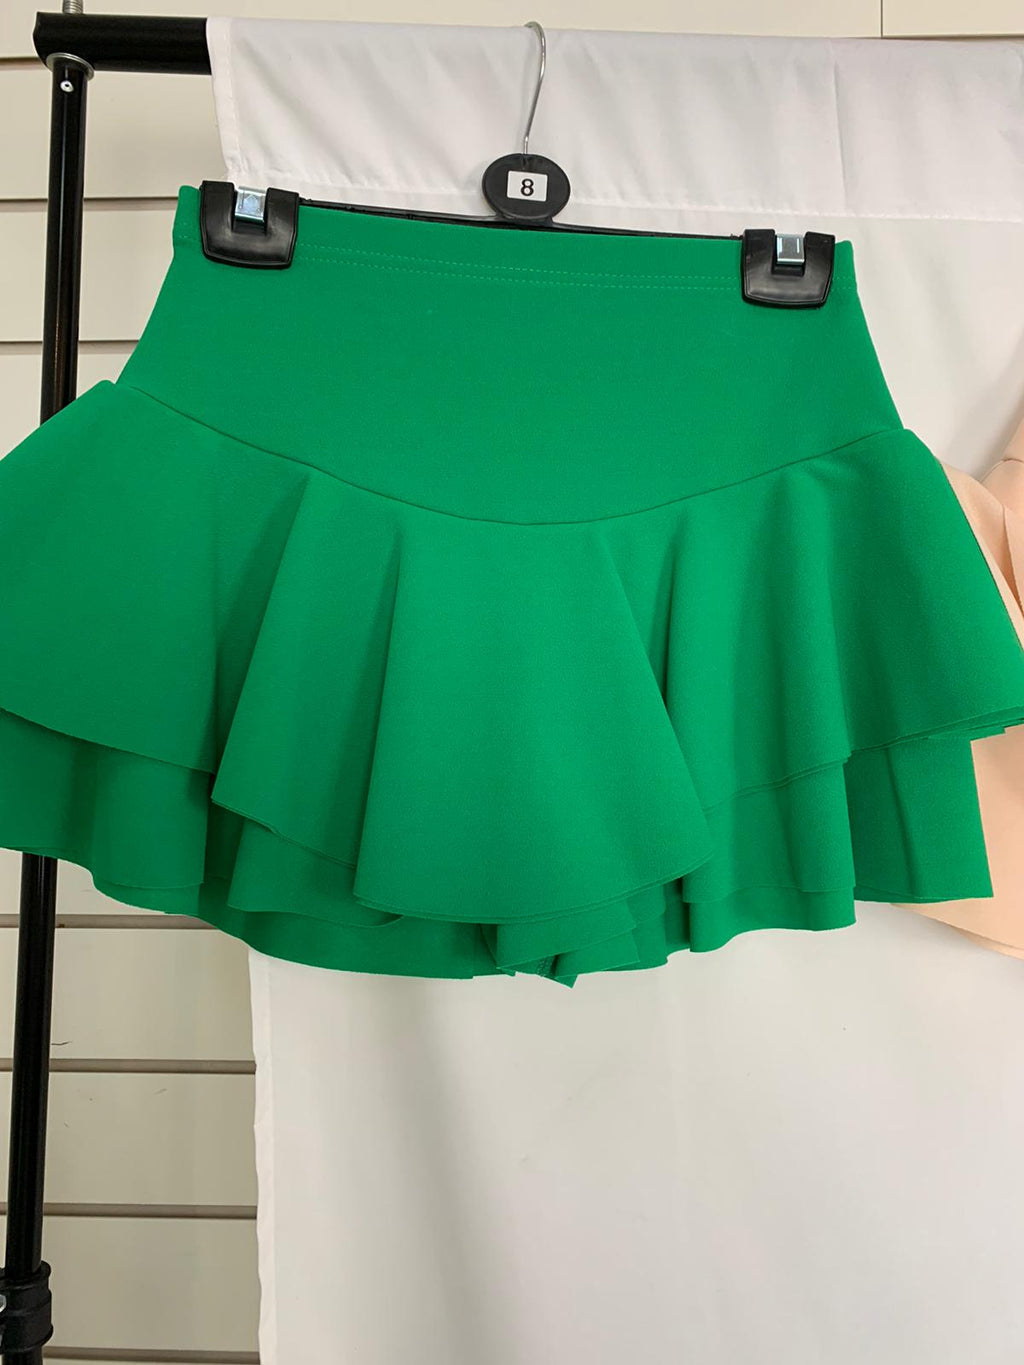 Frill Mini Skirt